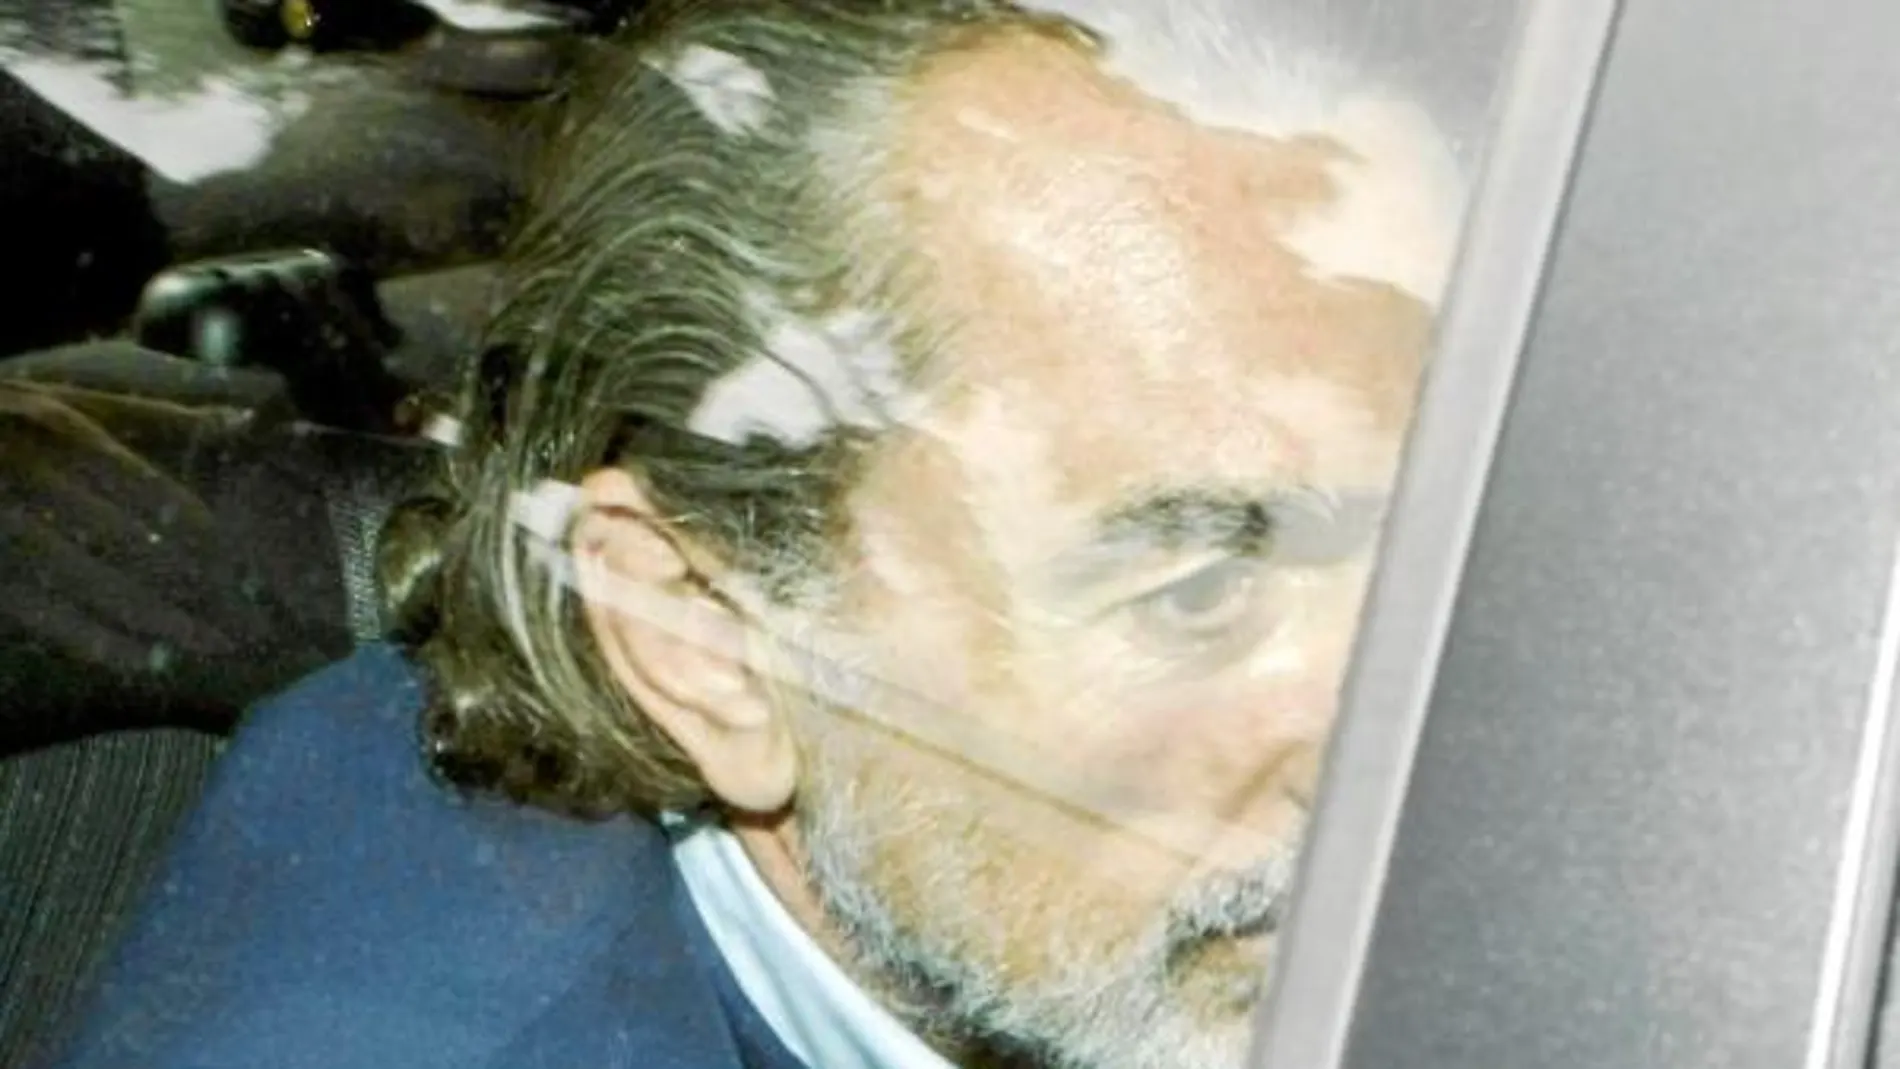 En febrero de 2009, el juez Garzón decretó el ingreso en prisión de Francisco Correa, situación en la que permanece desde entonces